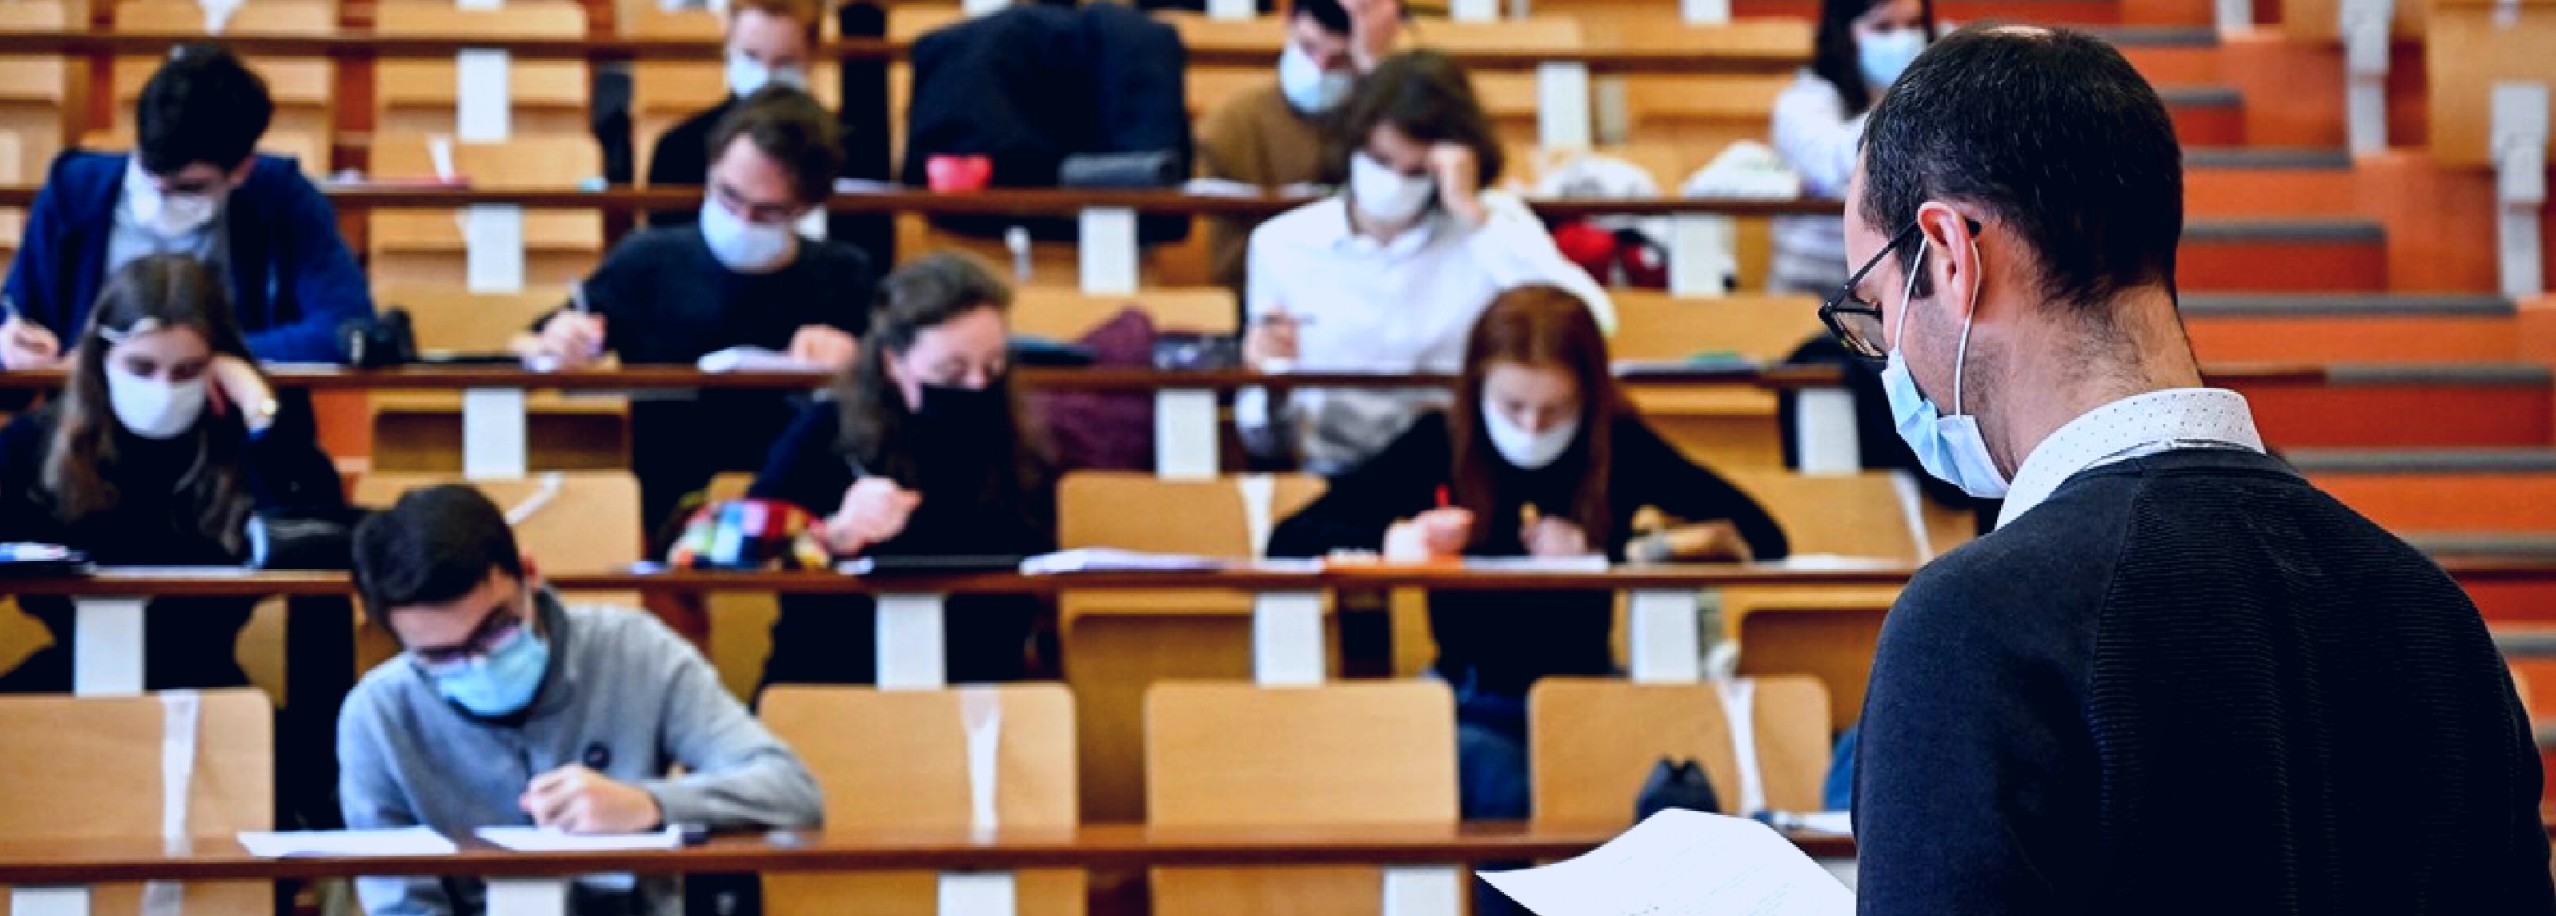  Απόφαση Πανεπιστημίου: Μαθήματα στα αμφιθέατρα με μάσκα και μόνο σε εμβολιασμένους ή με αρνητικό test!